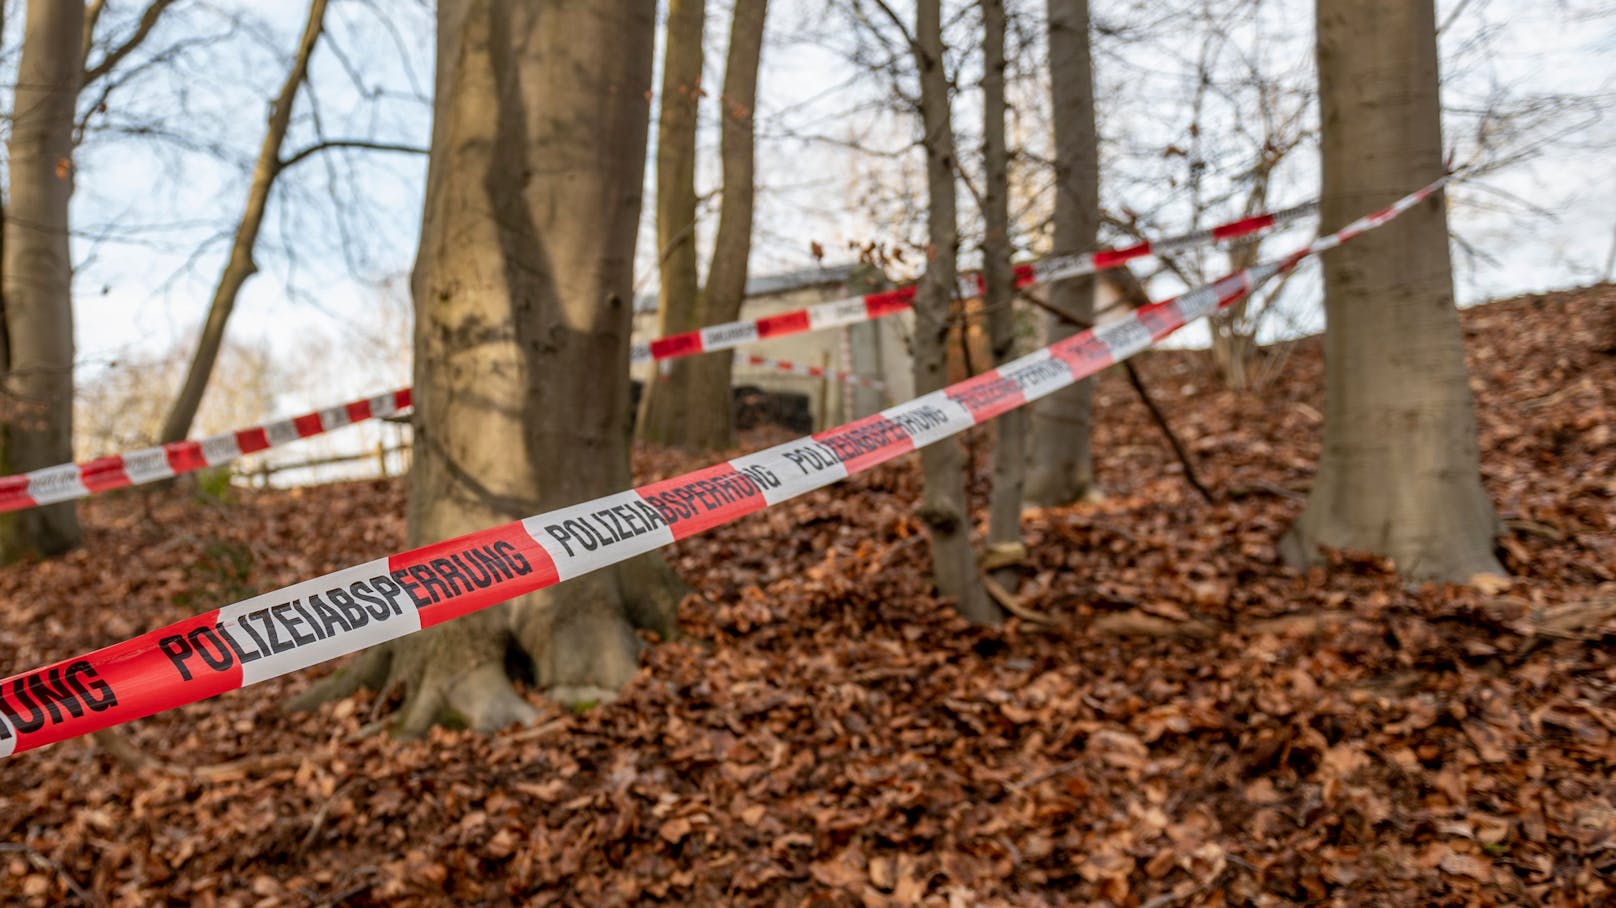 Polizei-Absperrband in einem deutschen Wald. Symbolbild